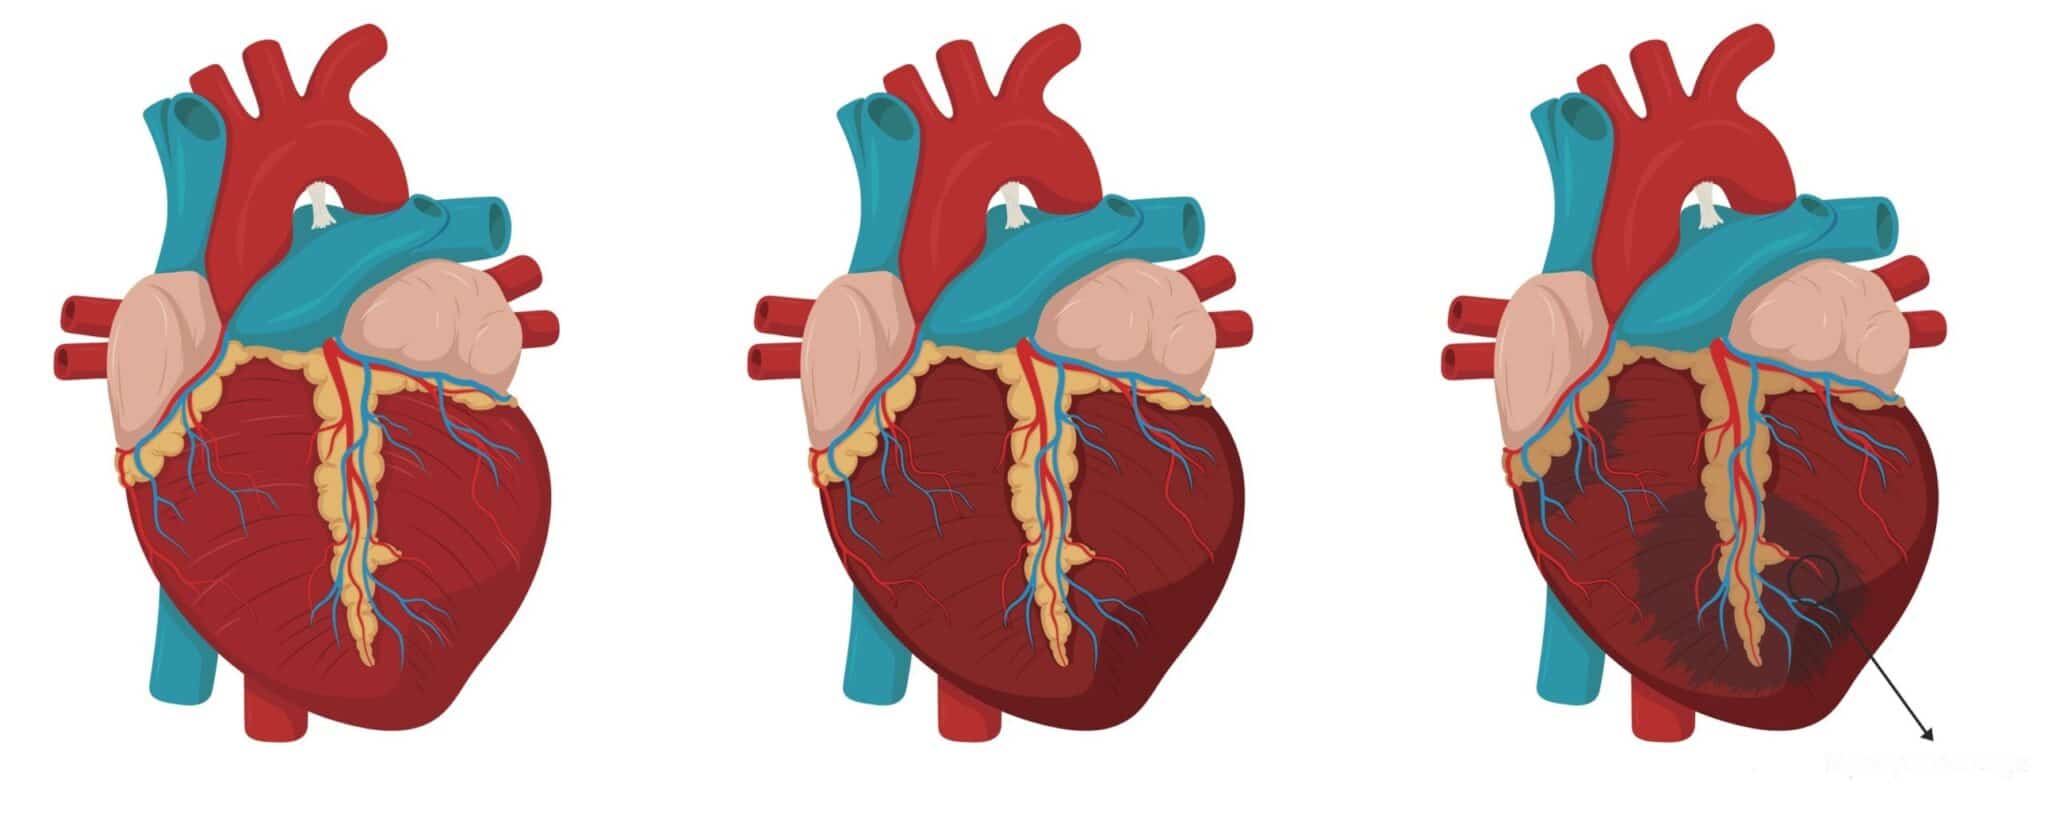 doktorlar kalp sağlığını nasıl test eder